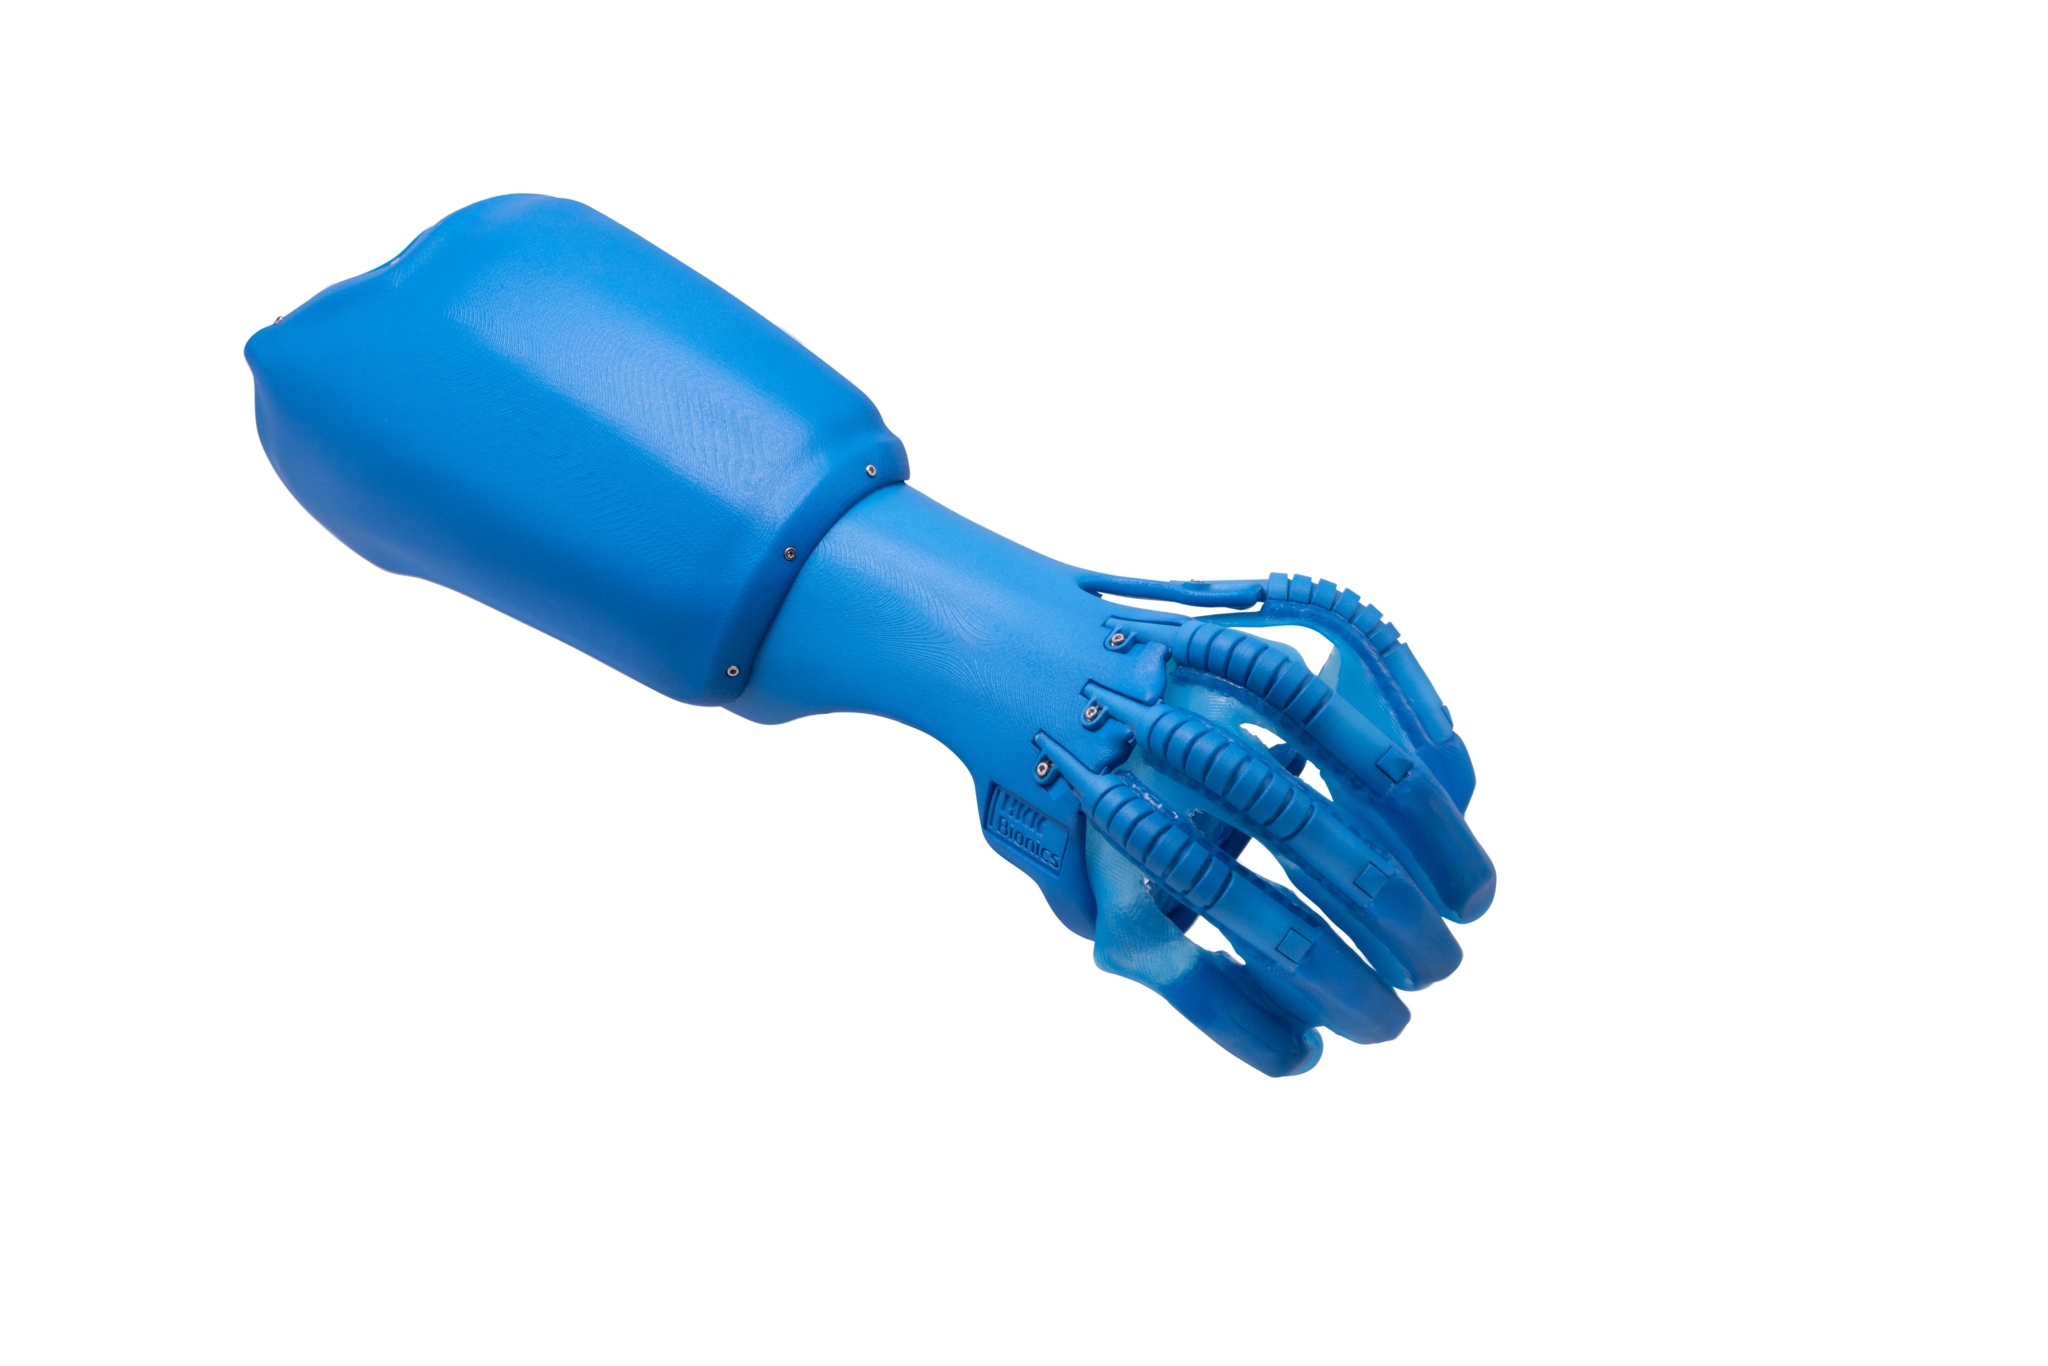 Das Bild zeigt eine blaue Plastikhand, bestehend aus mehreren miteinander verschraubten Teilen: einem Schaft, unter dem sich die Muskelsensoren befinden, dessen Unterseite aufgeklappt ist; es folgt ein Zwischenstück sowie die fünf Finger, auf denen die so